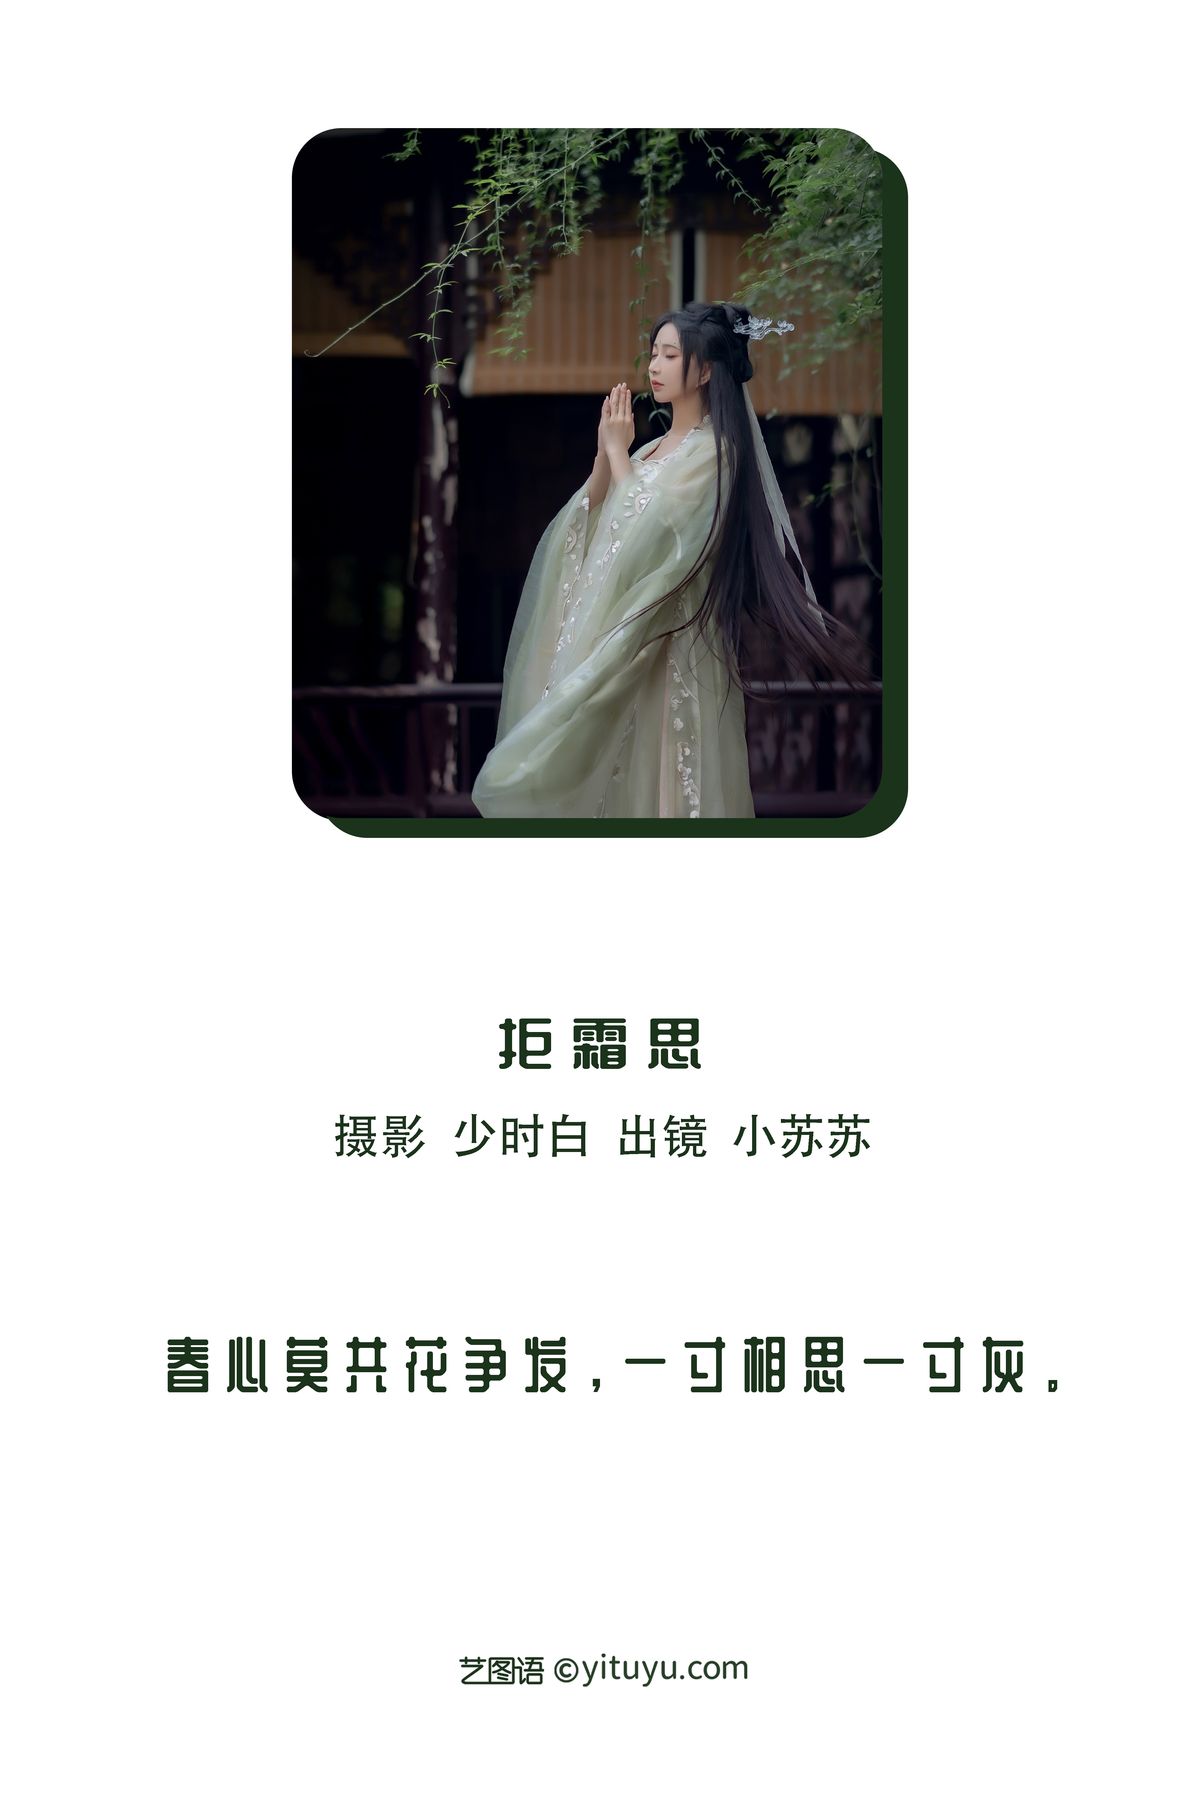 YiTuYu艺图语 Vol 3069 Qi Luo Sheng De Xiao Su Su 0001 9378466143.jpg